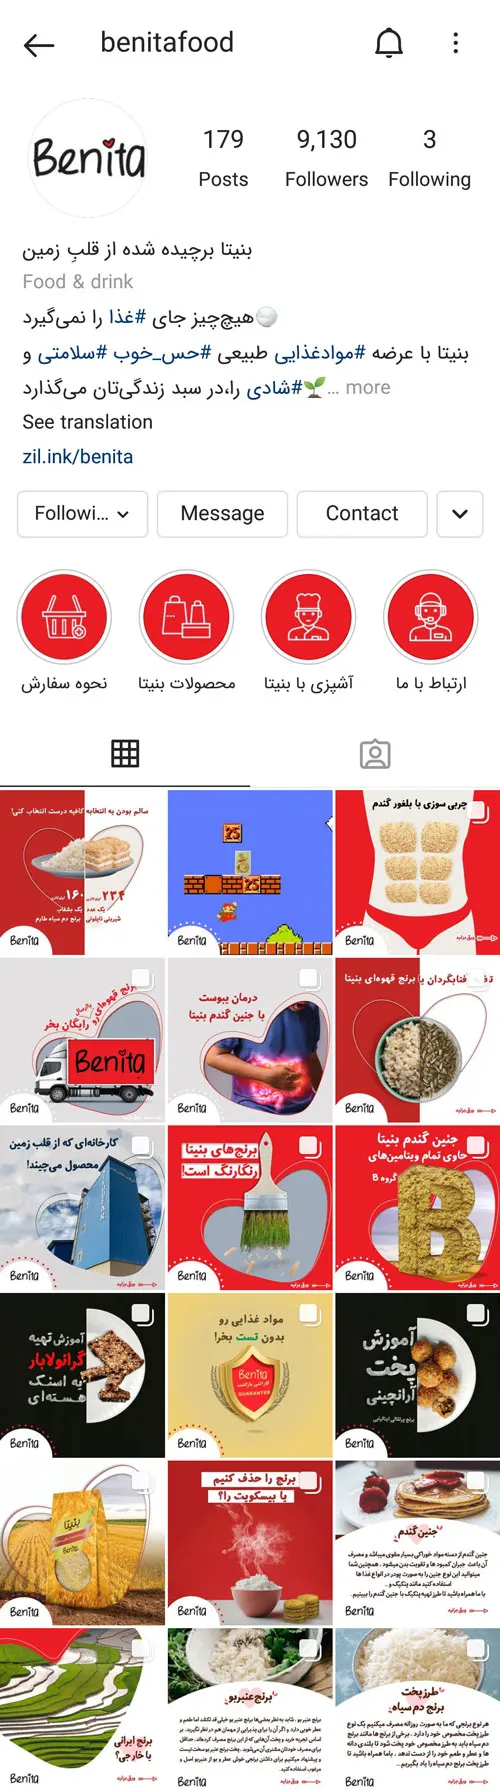 Instagram-benitafood